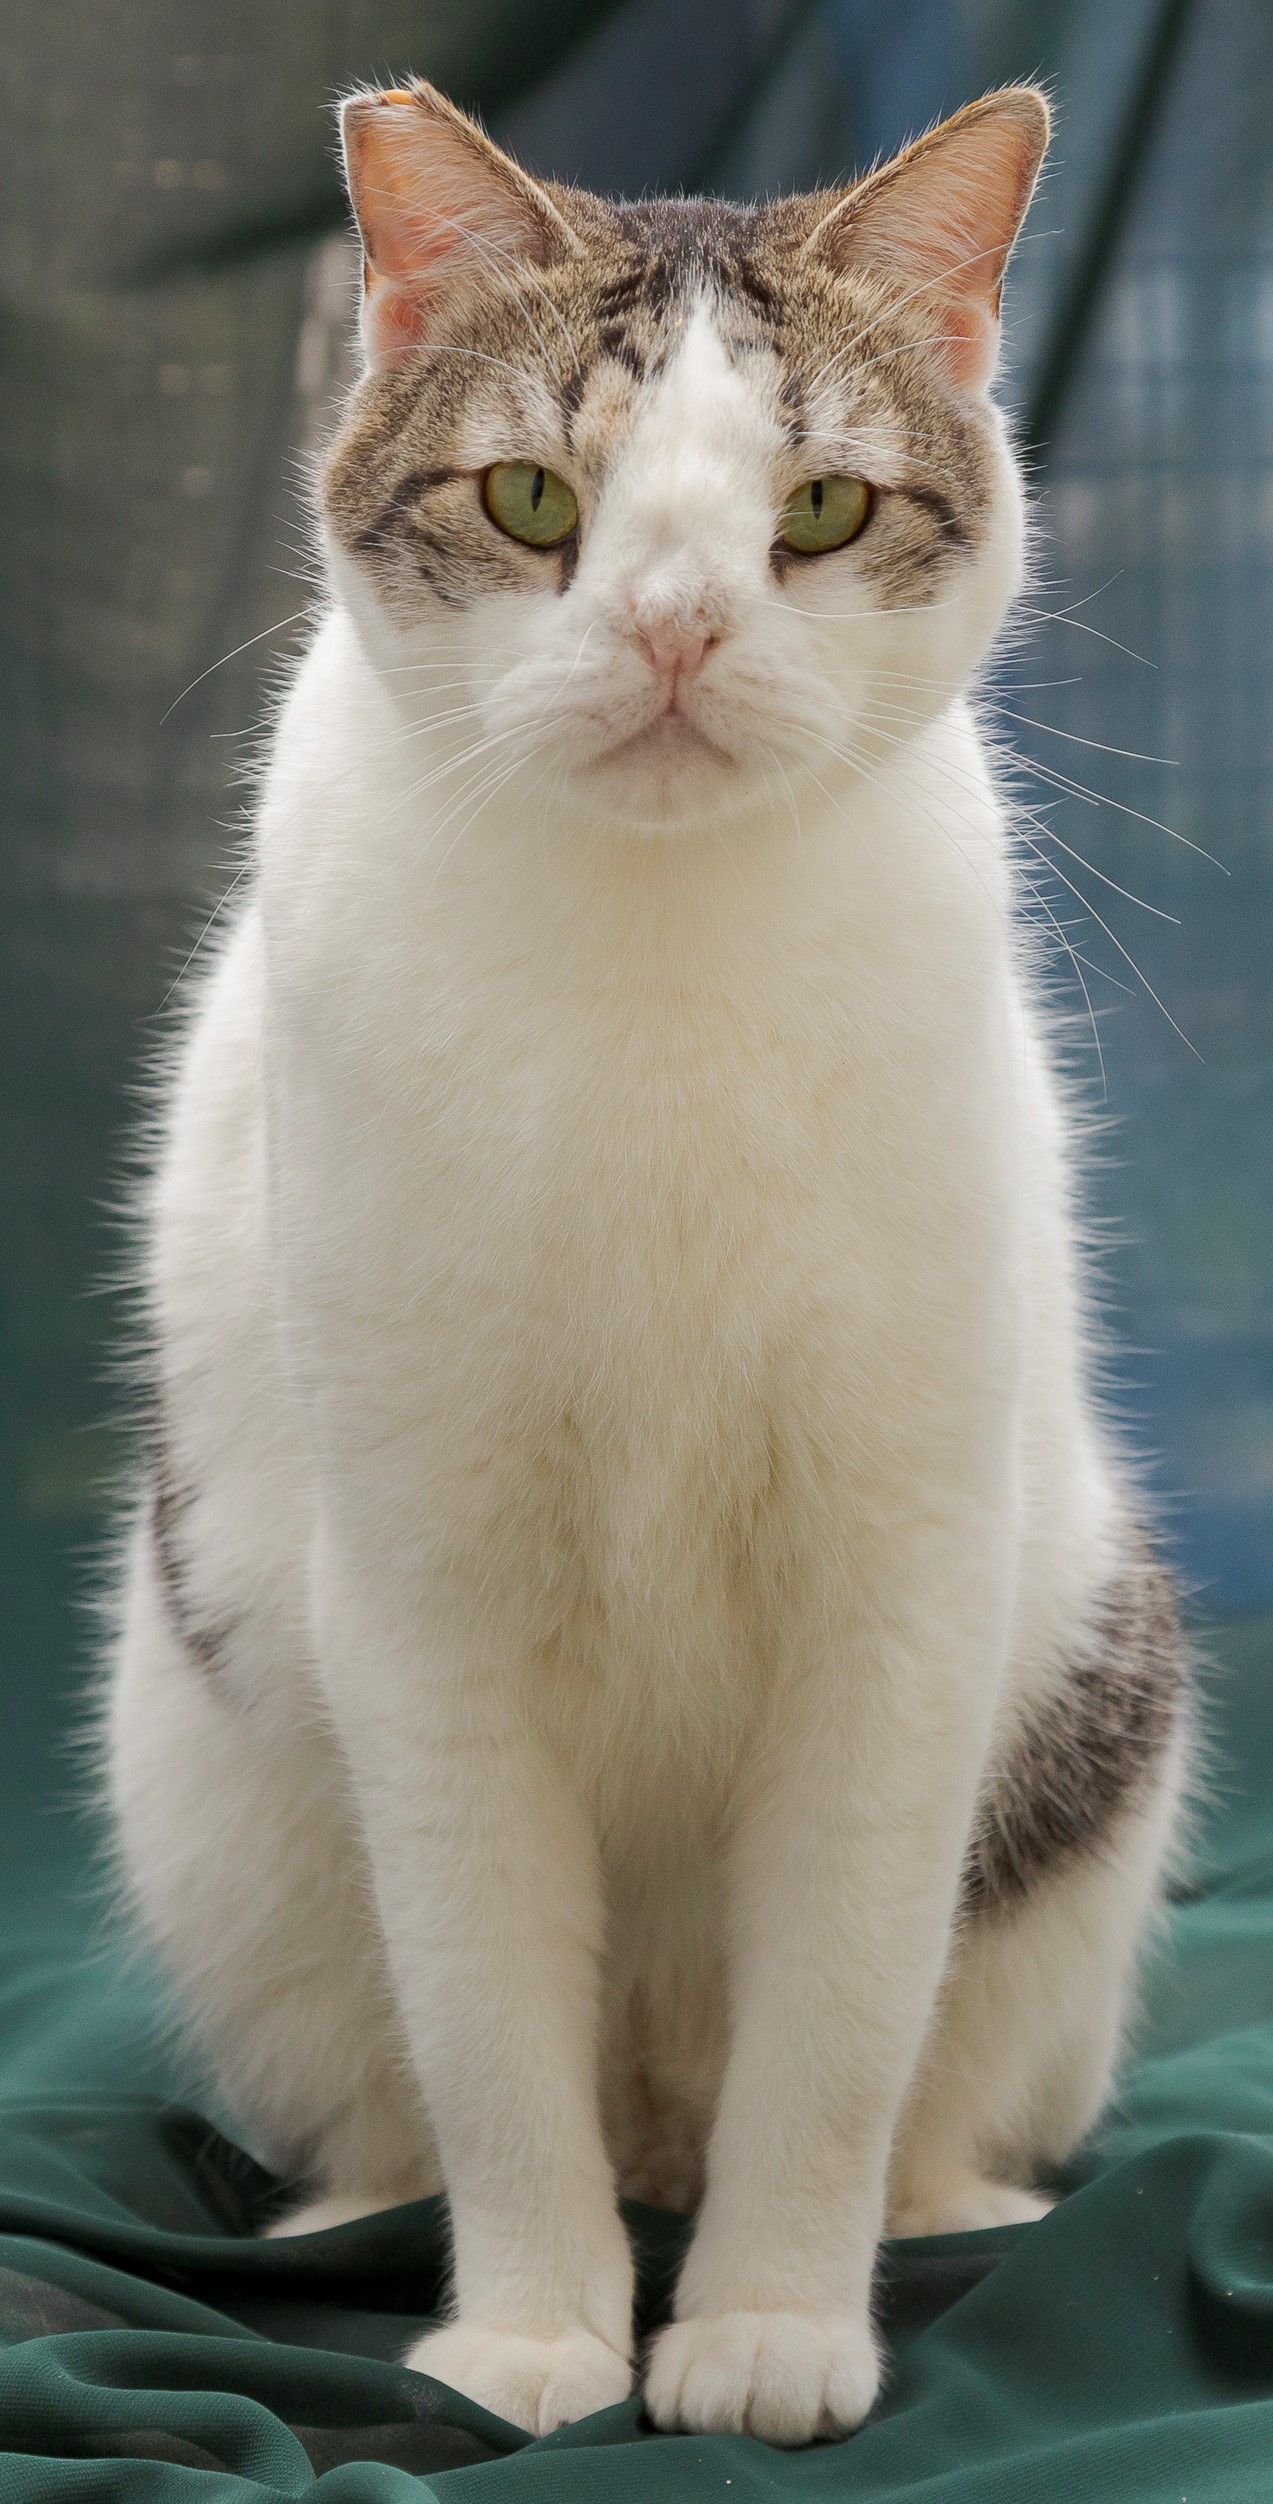 #PraCegoVer: Fotografia do gato Harry, ele tem as cores branco e cinza, seus olhos são verdes. Ele está sentado em cima de pano verde.